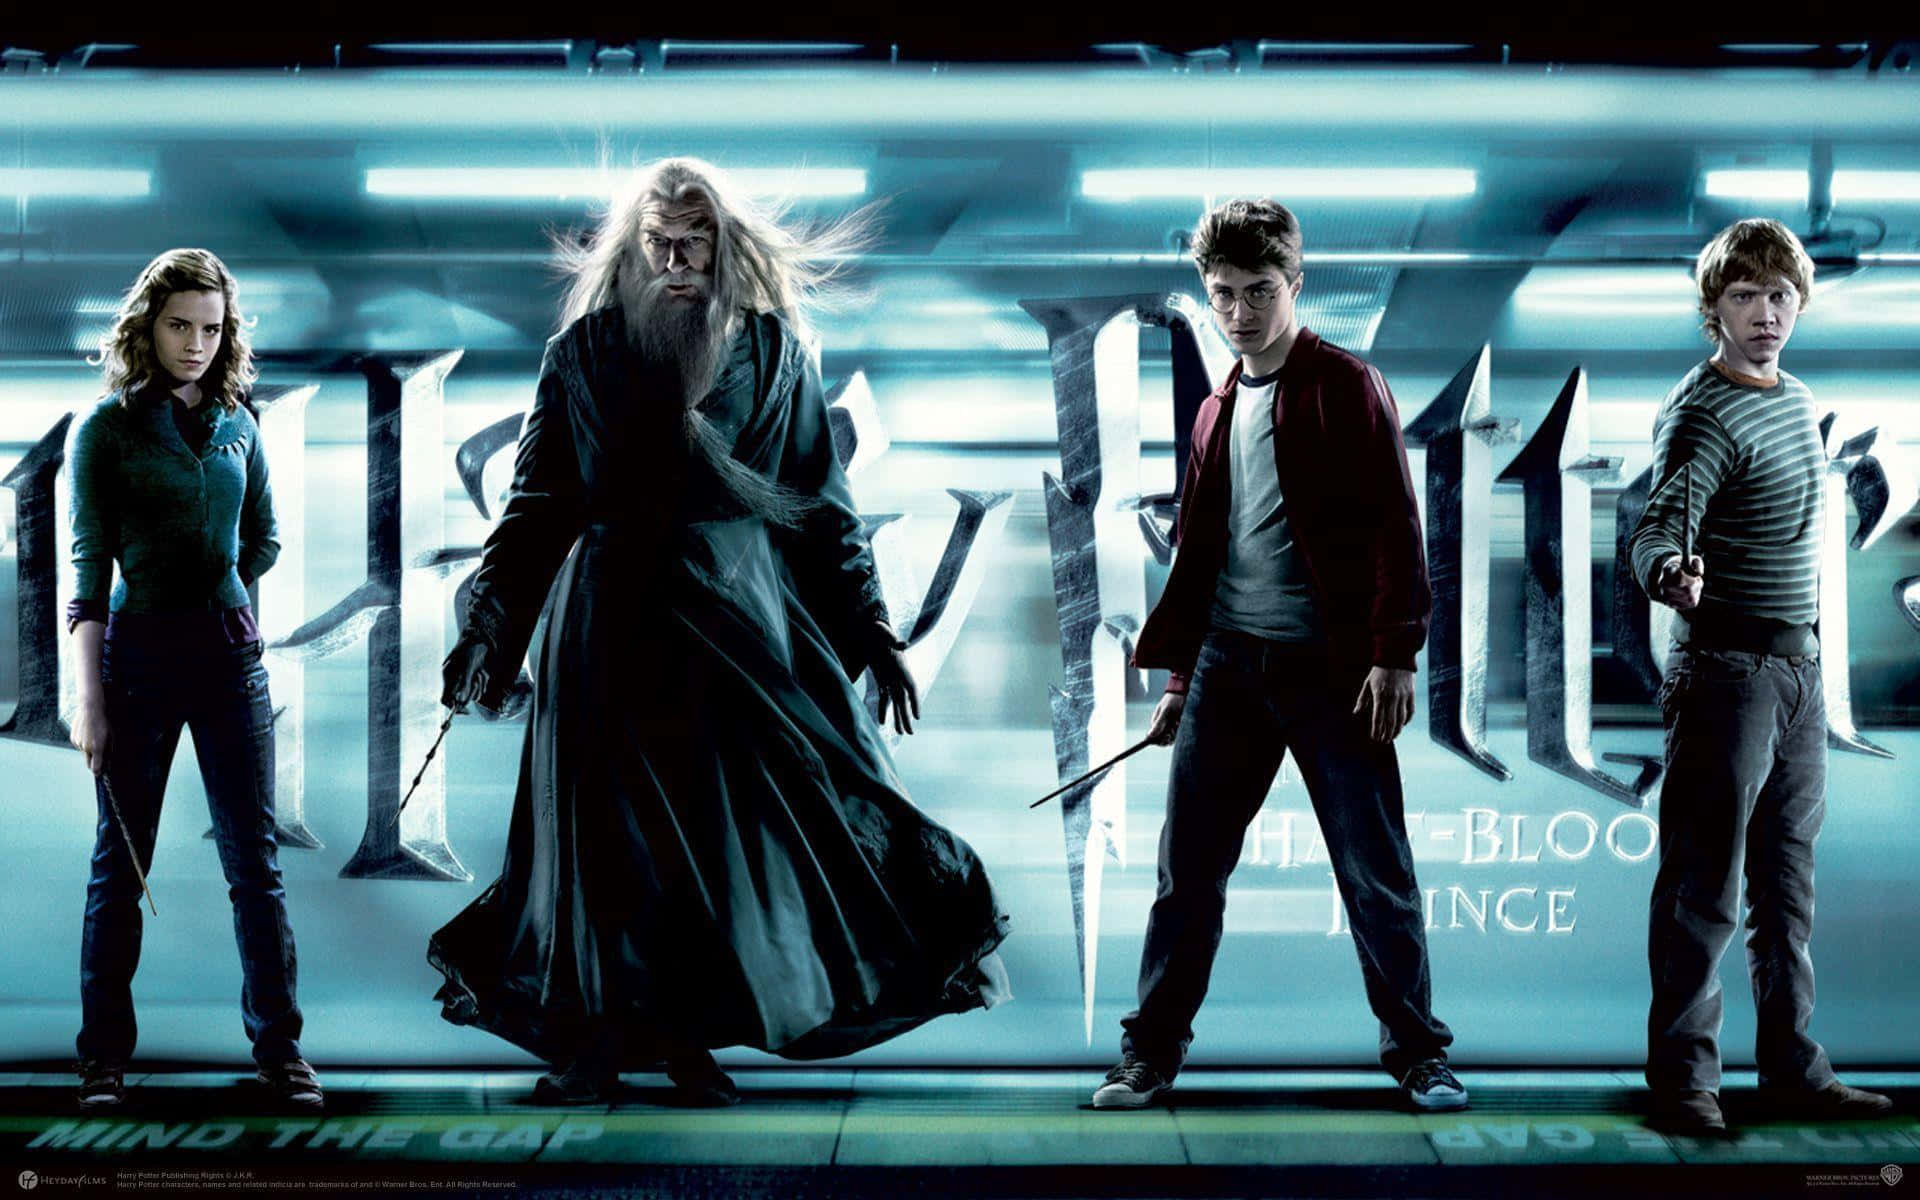 Alle karaktererne fra Harry Potter-franchisen sammen på én væg. Wallpaper